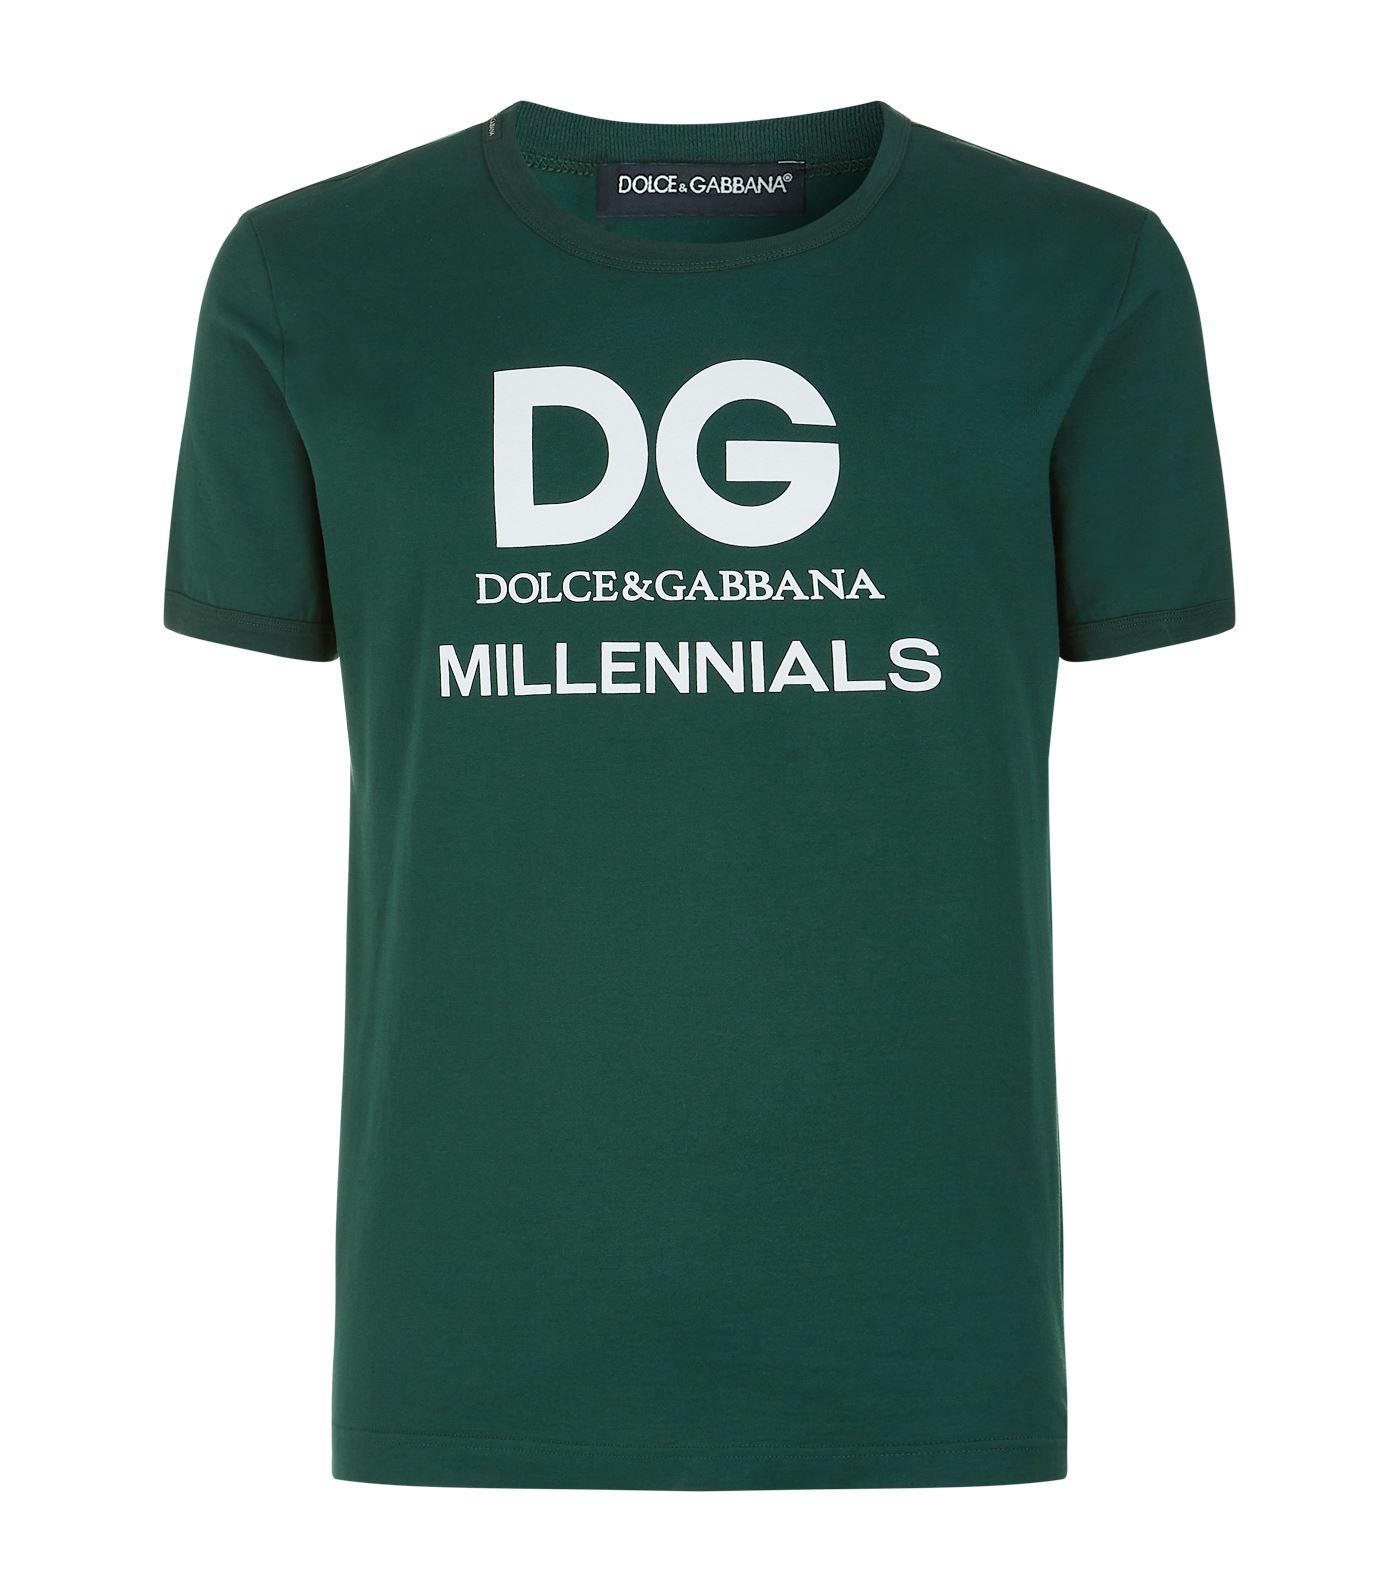 Dolce \u0026 Gabbana Dg Millennials T-shirt 